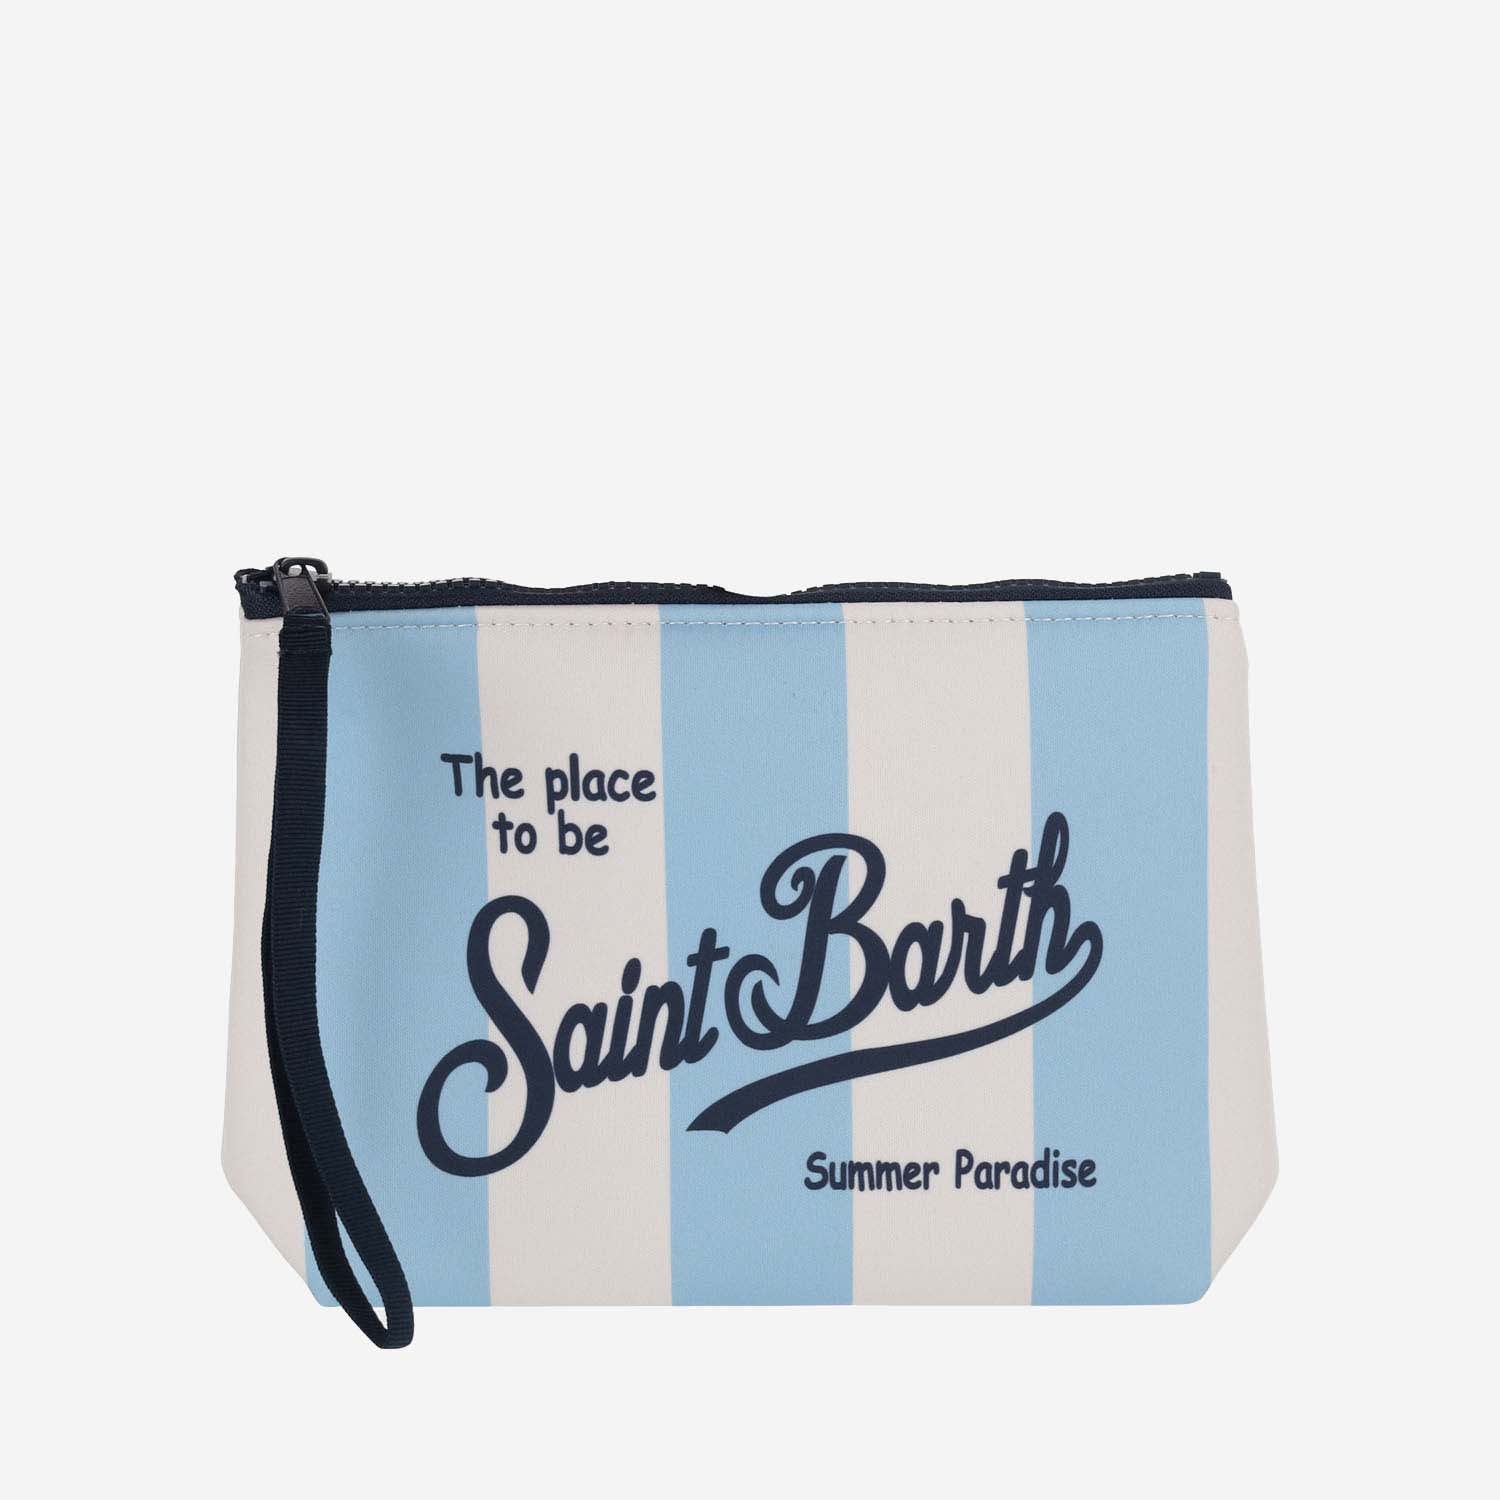 Scuba Clutch Bag With Striped Pattern Clutch